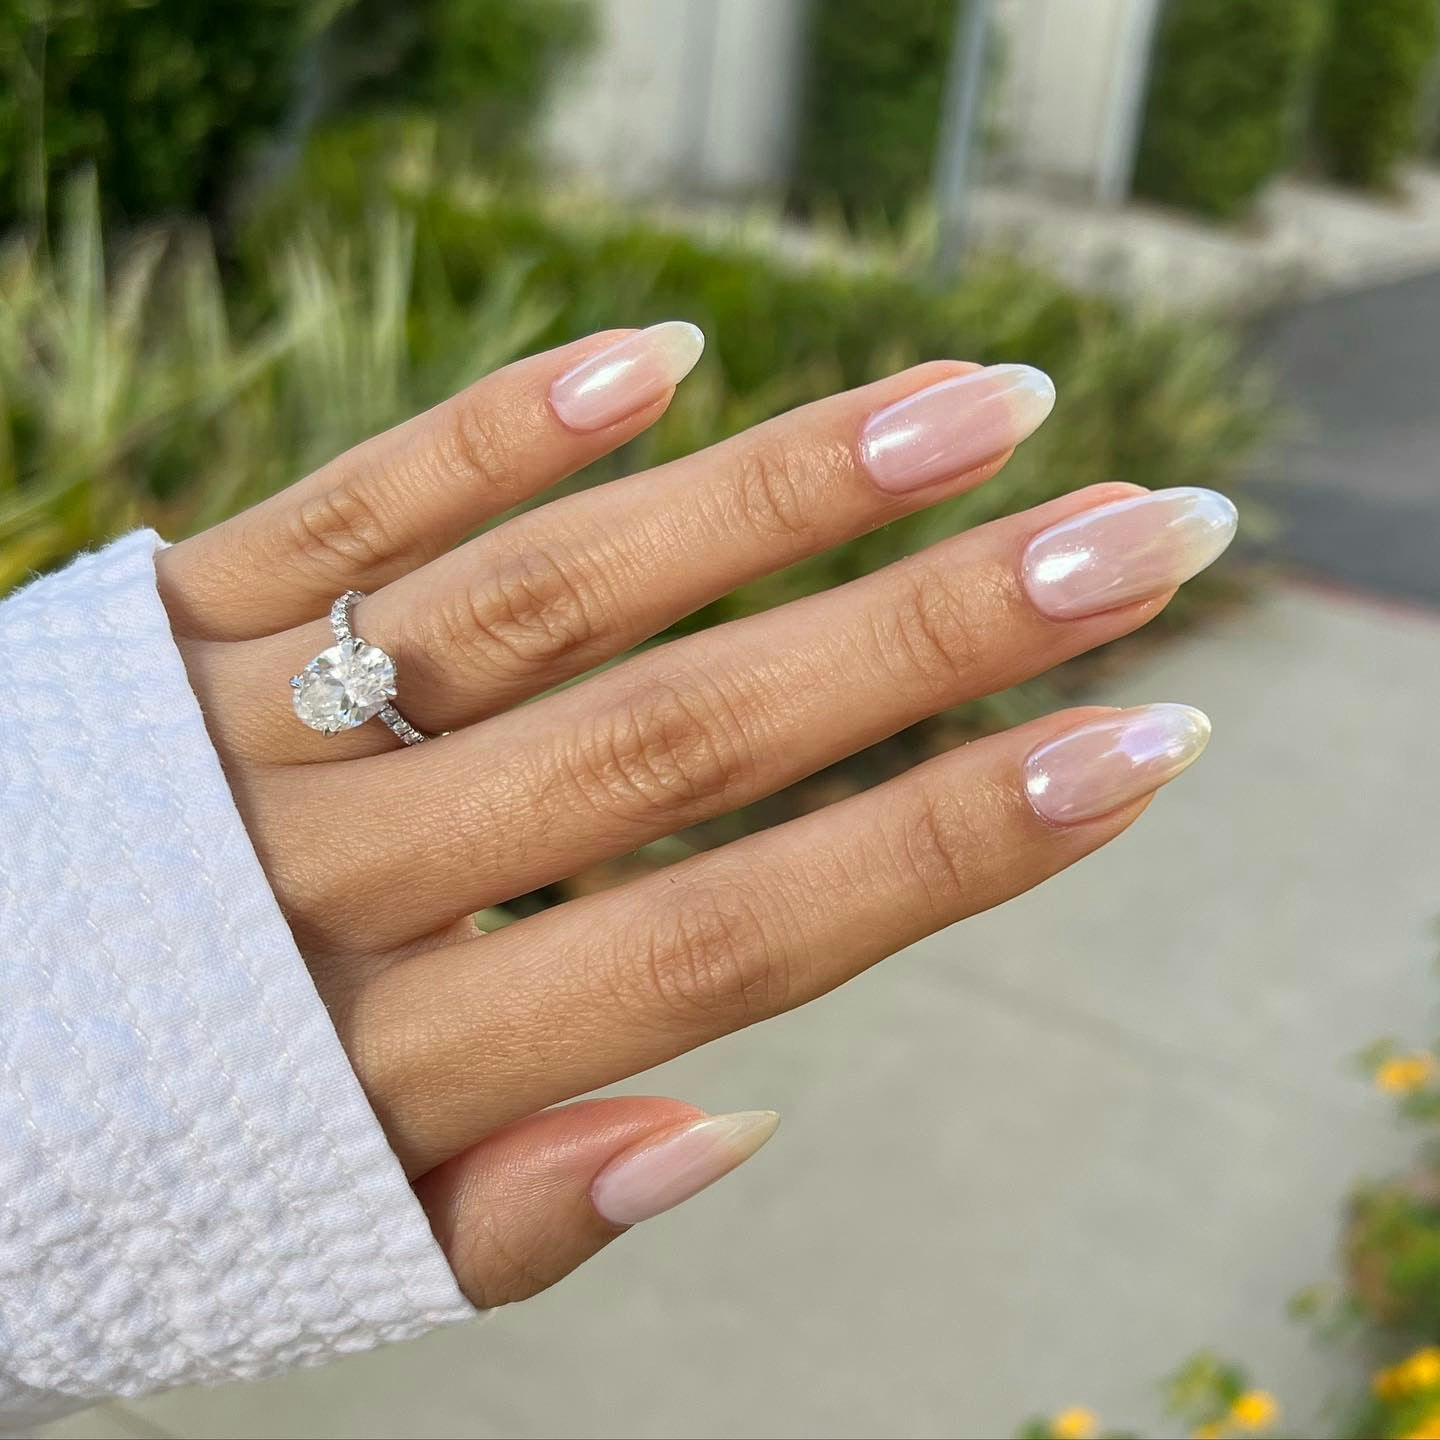 Bridal nails | Engagement nails, Dipped nails, Wedding nails